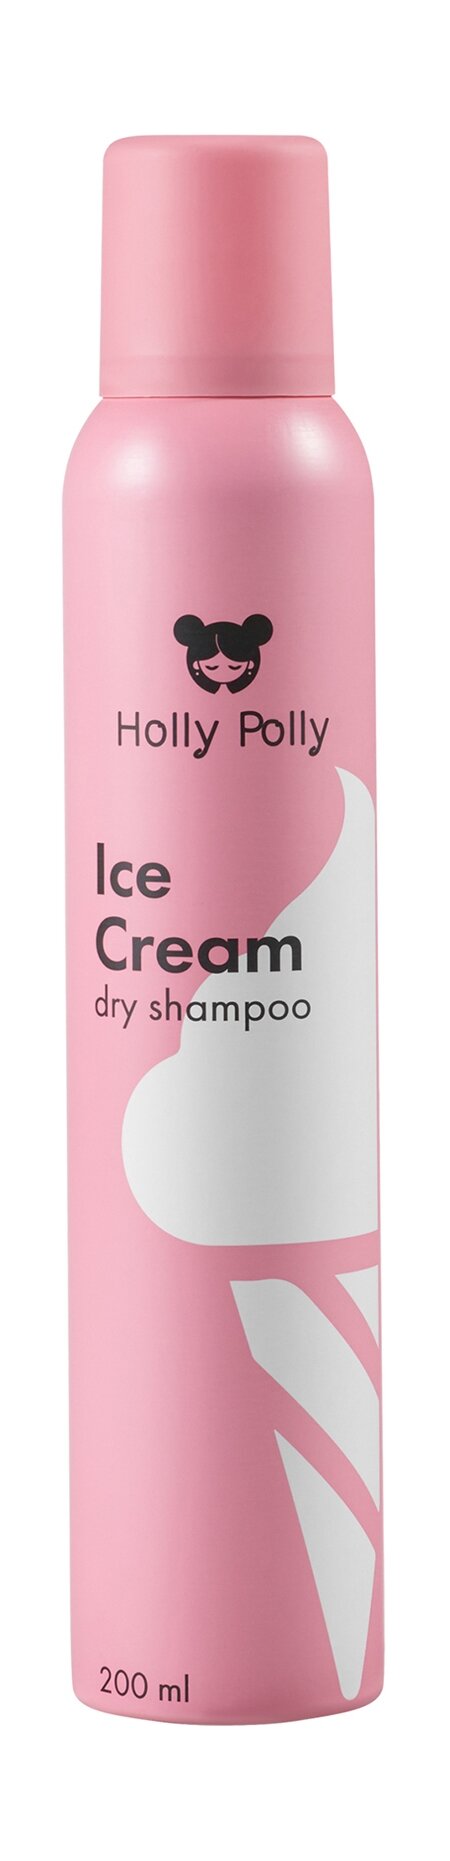 HOLLY POLLY Сухой шампунь Holly Polly Ice Cream, 200 мл